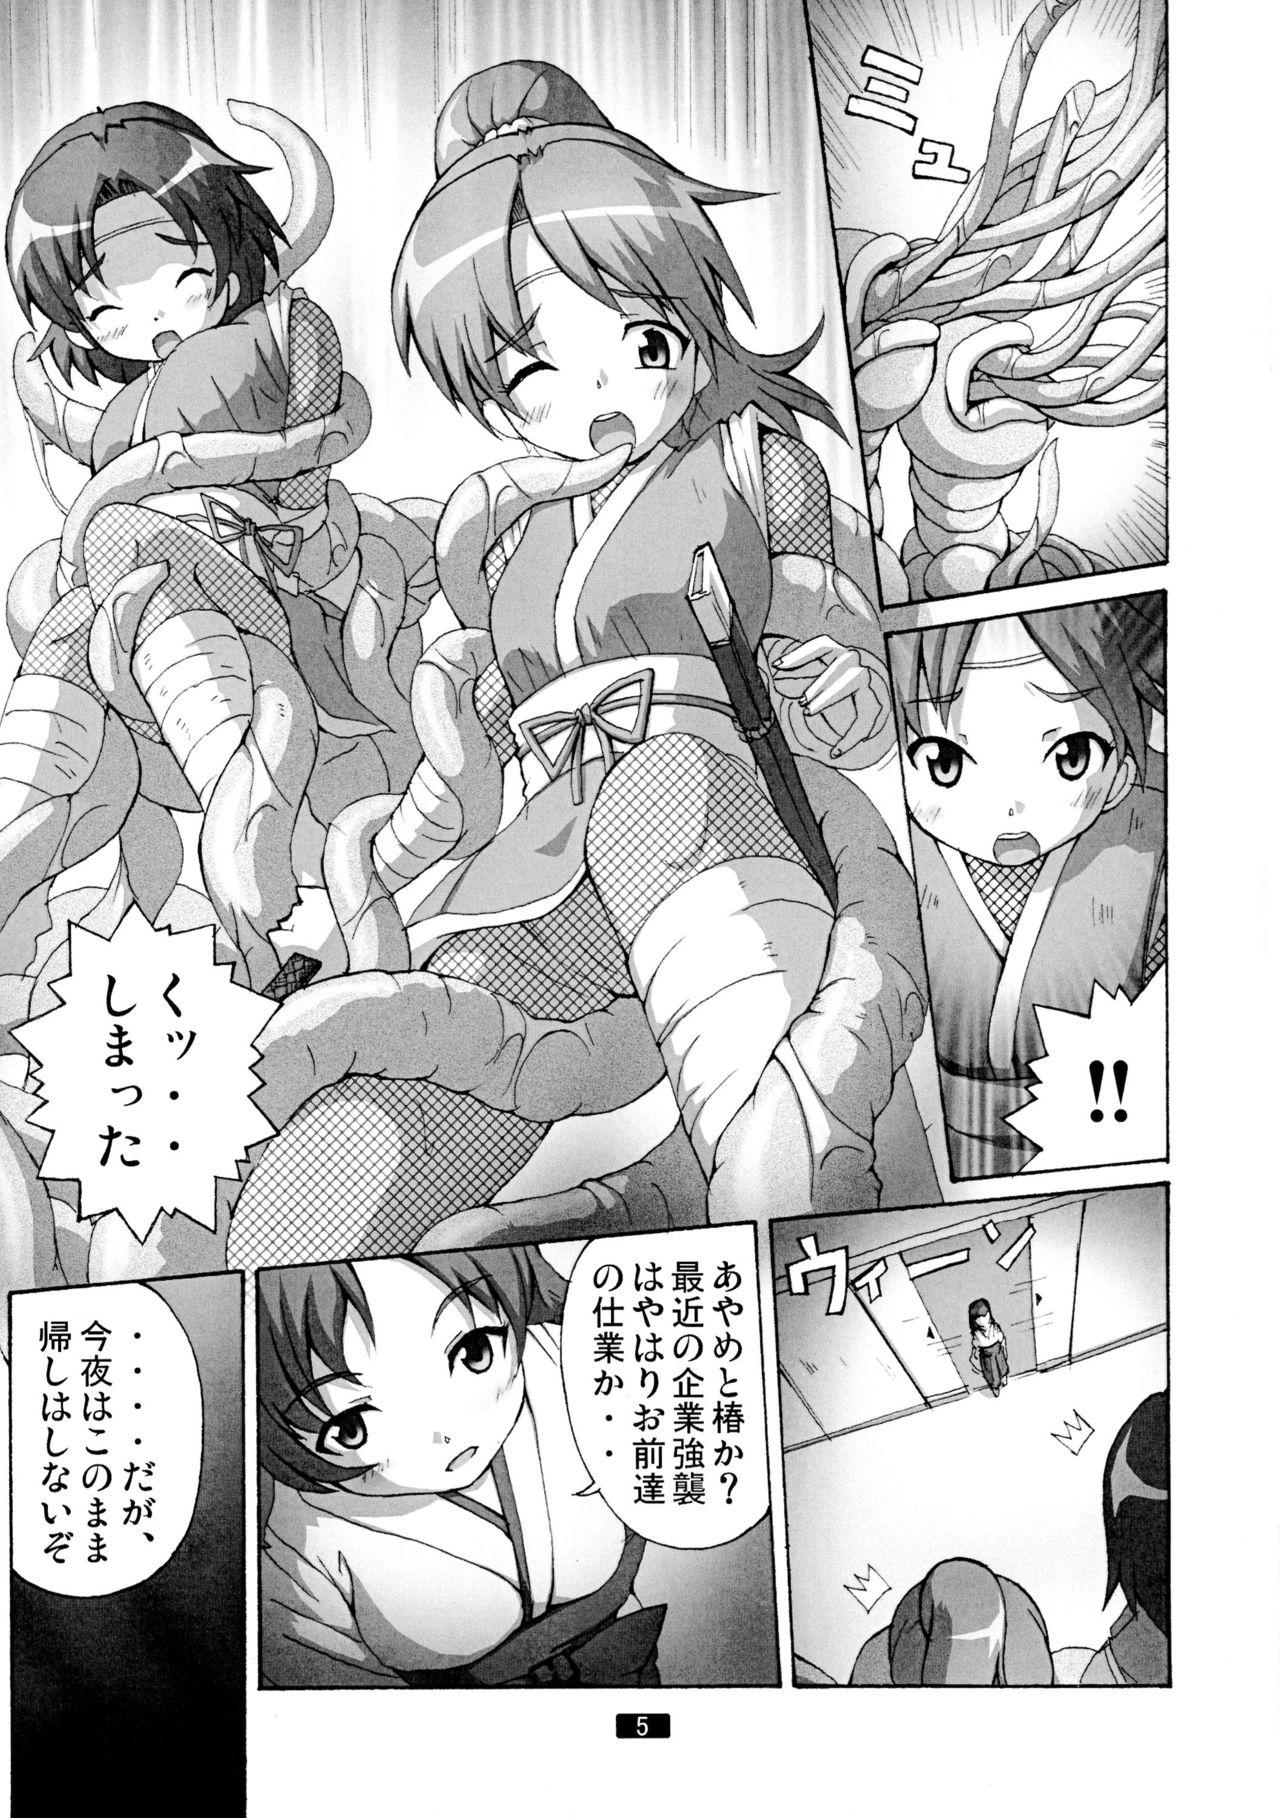 Hot Naked Women Kaiun no Taimashi Nozomi 5 1/ 2 Stepfather - Page 5